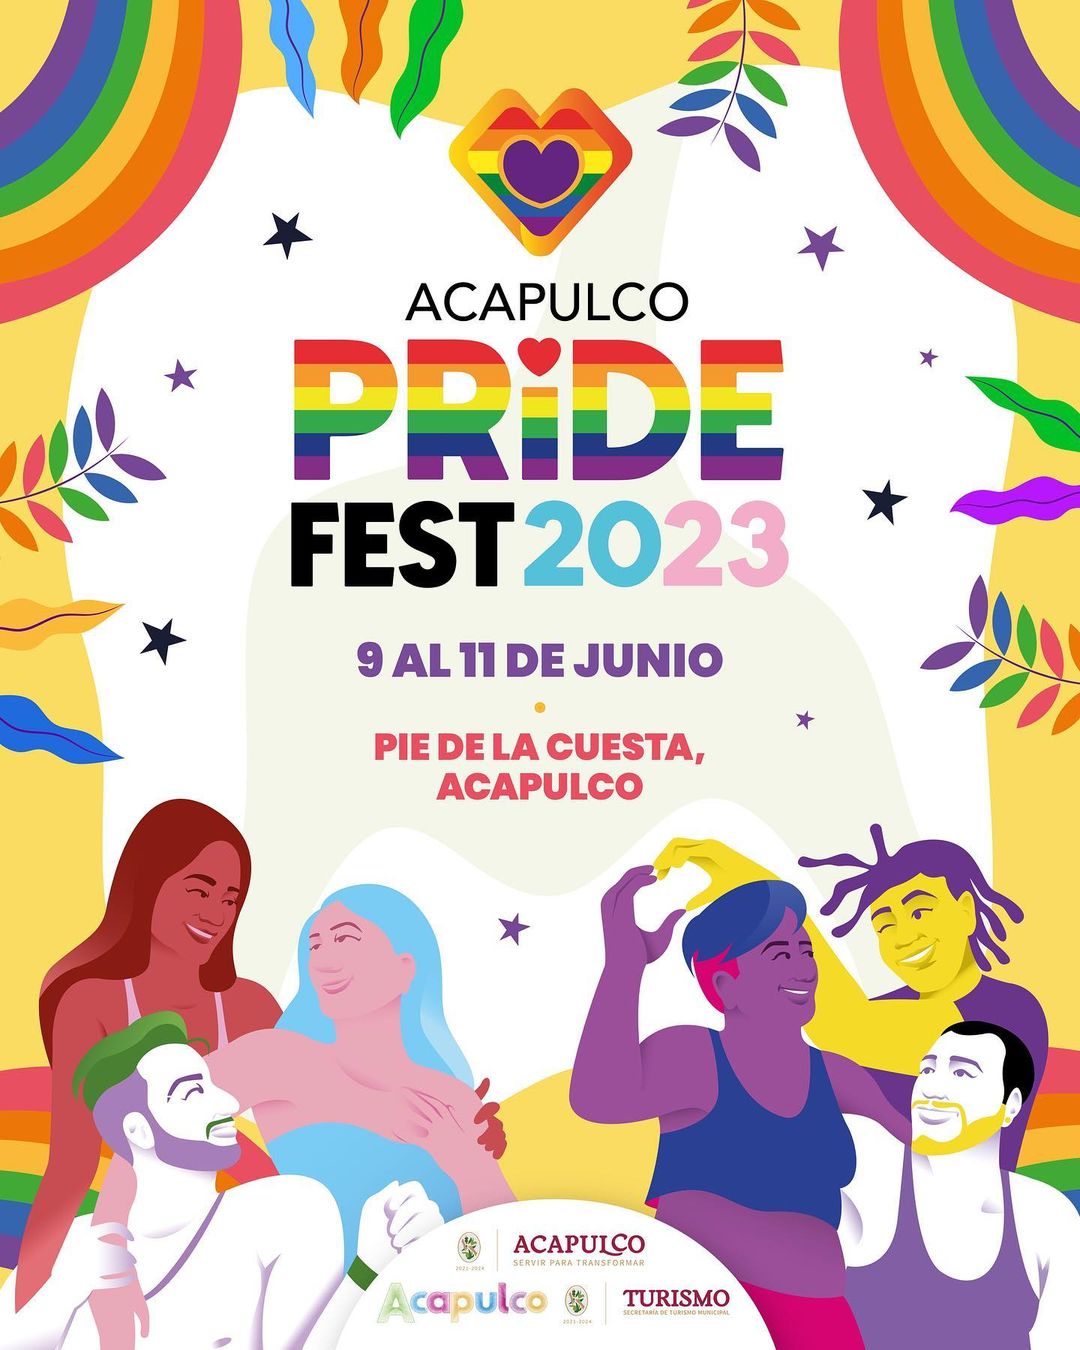 Acapulco Pride FestPhoto 1 of 3